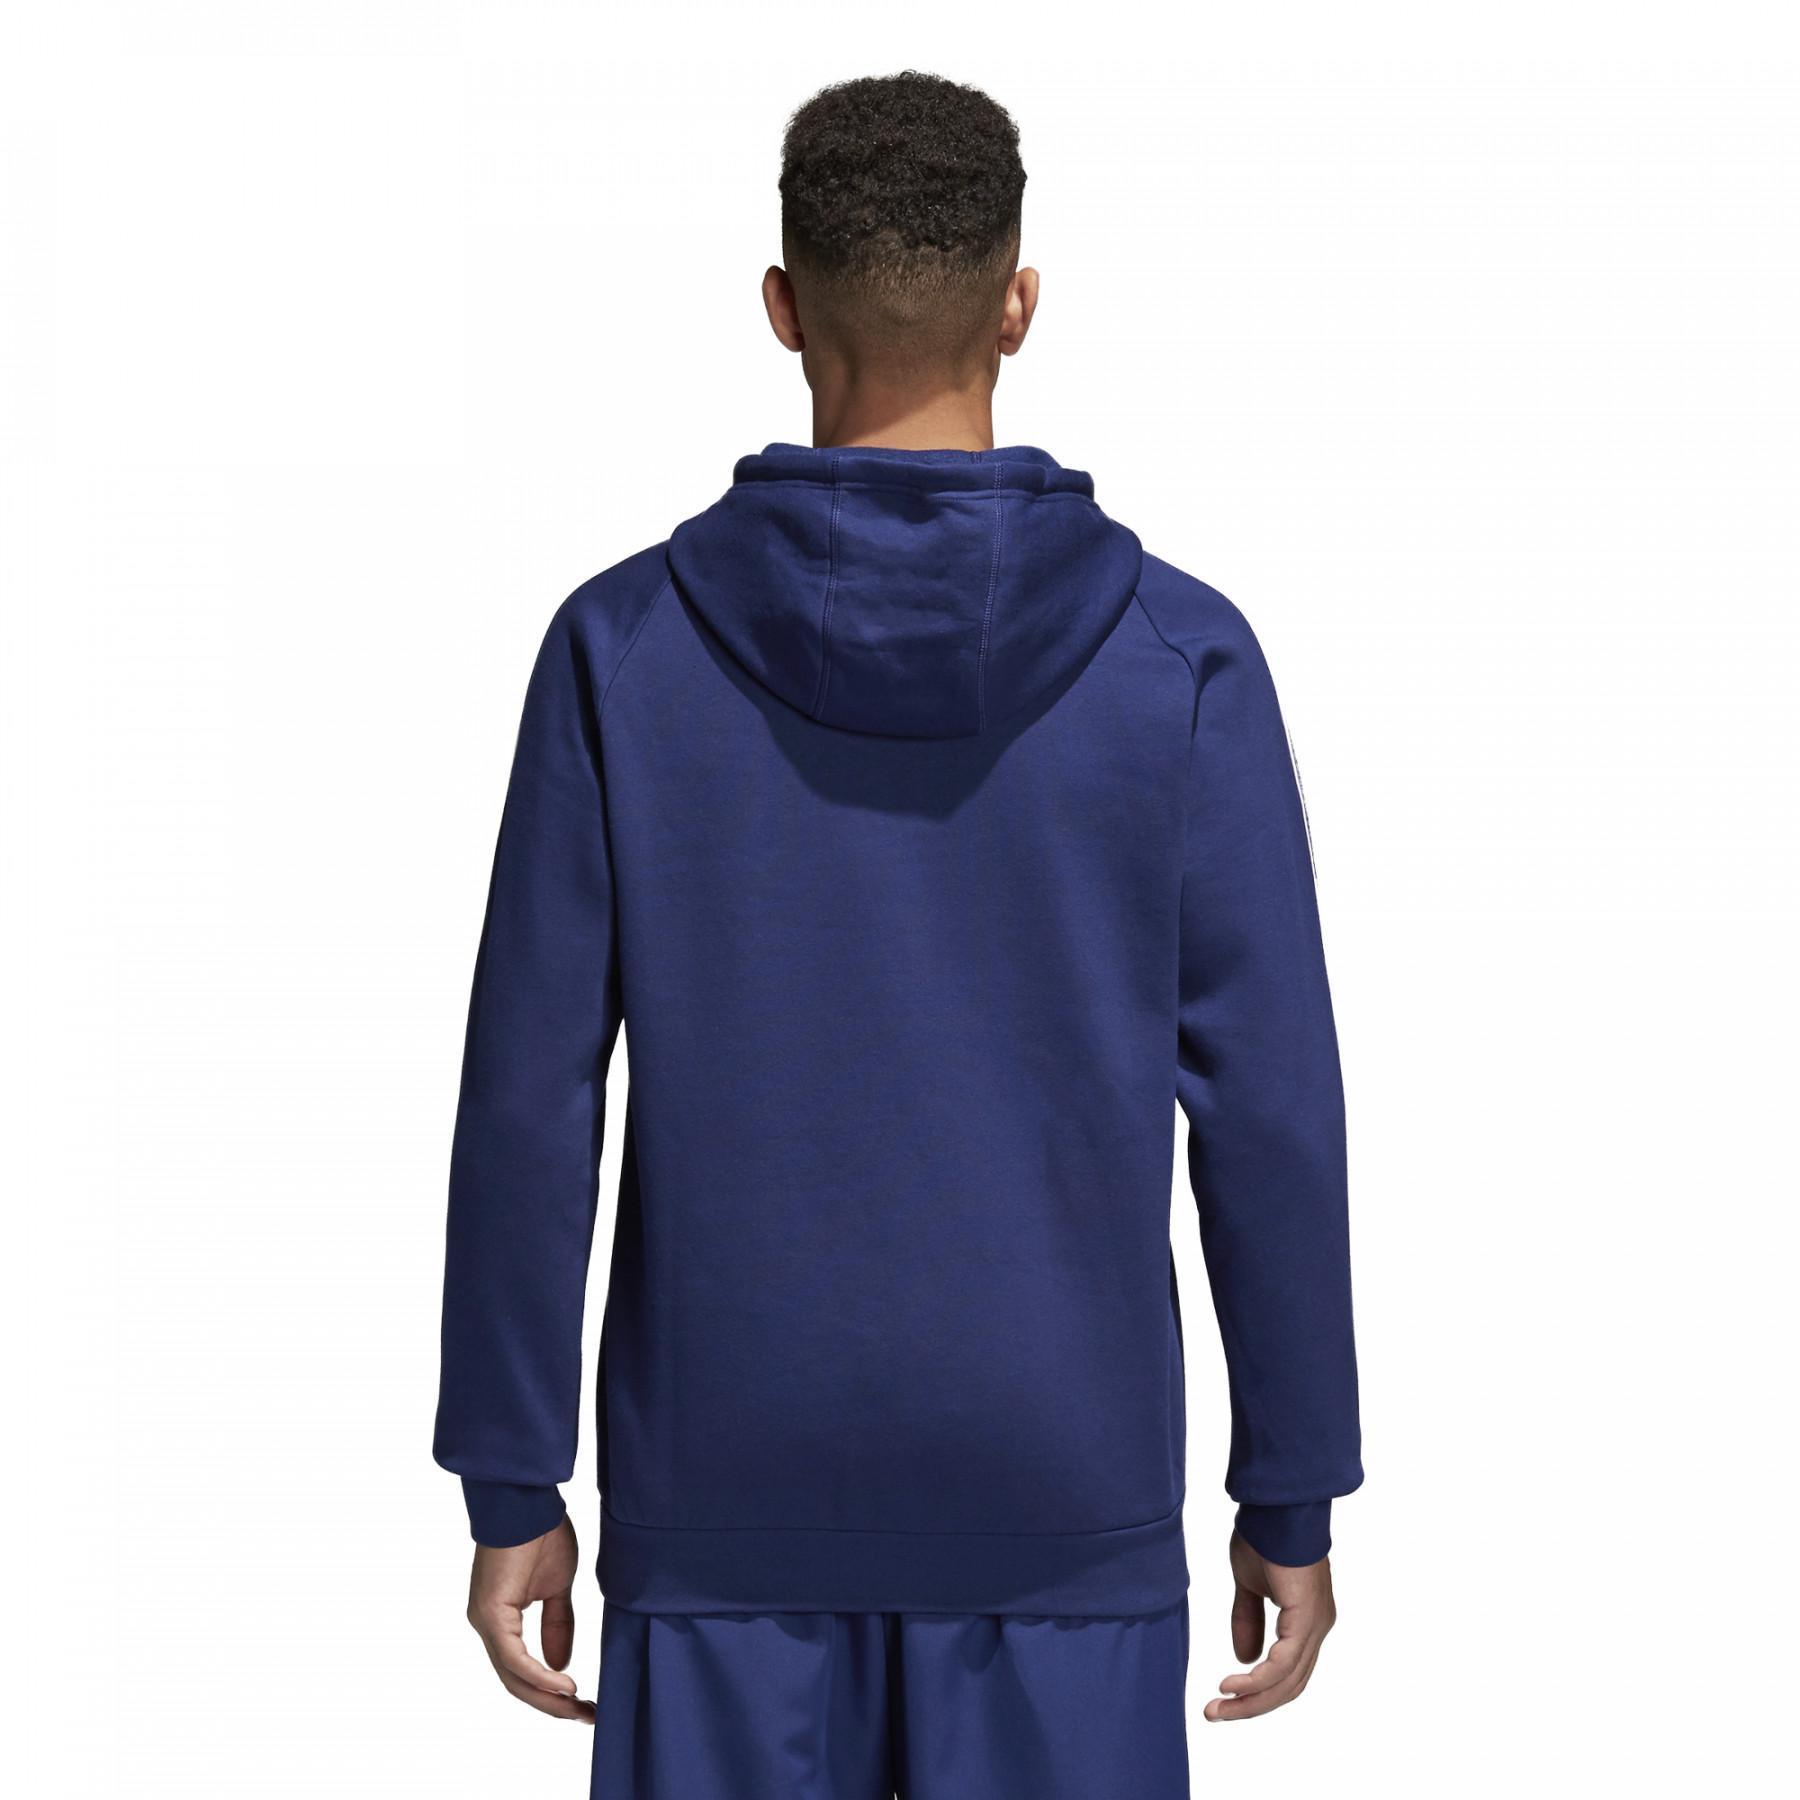 Hooded sweatshirt adidas Core 18